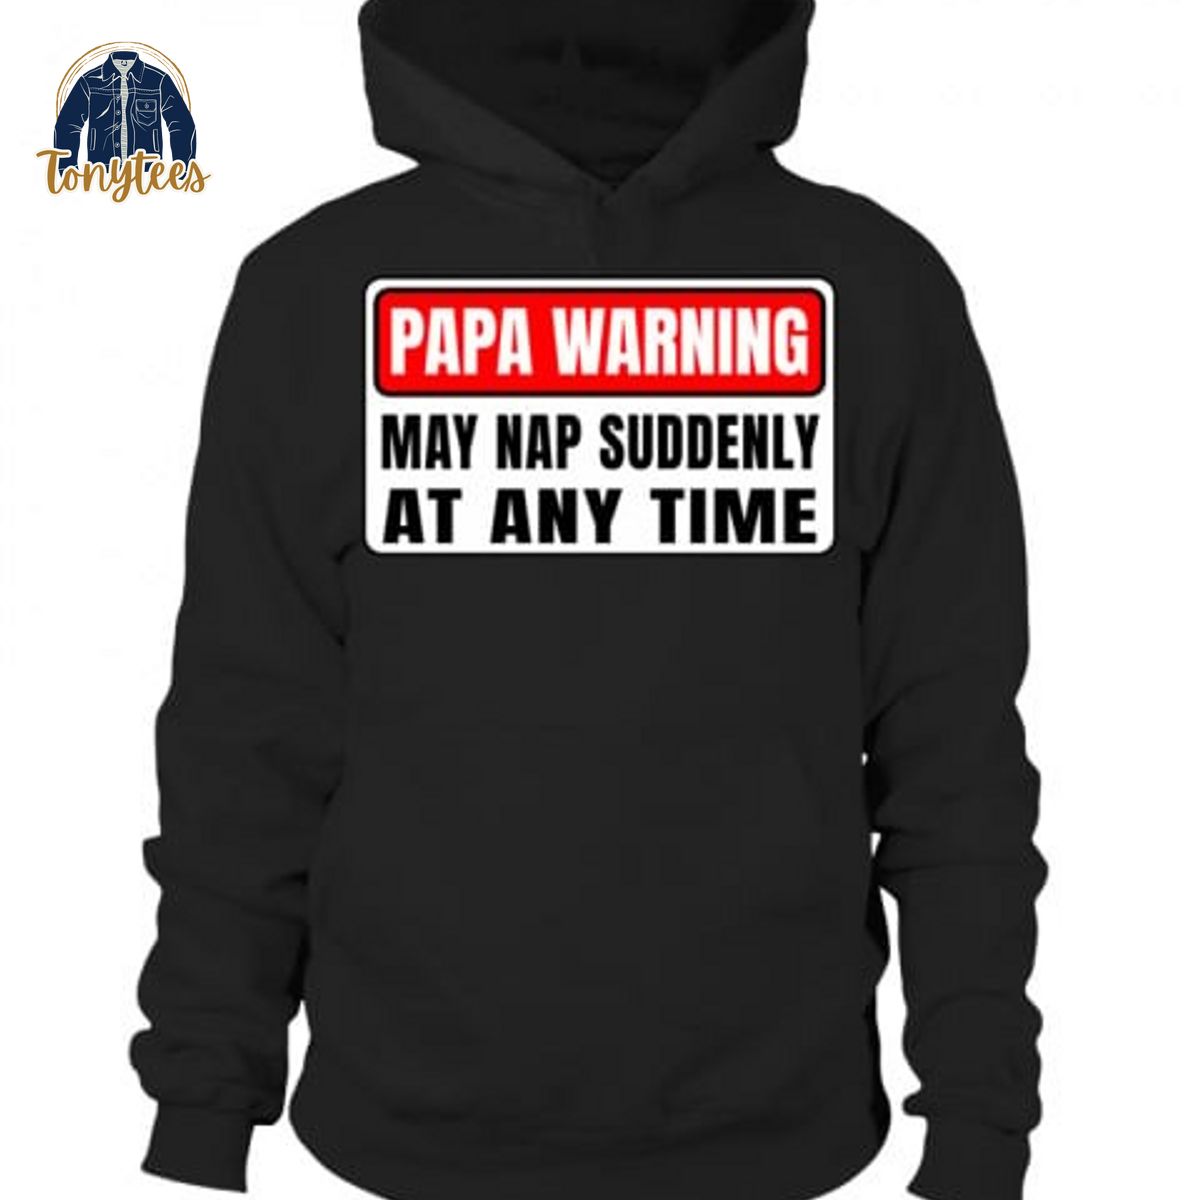 Papa warning may nap suddenly at any time shirt